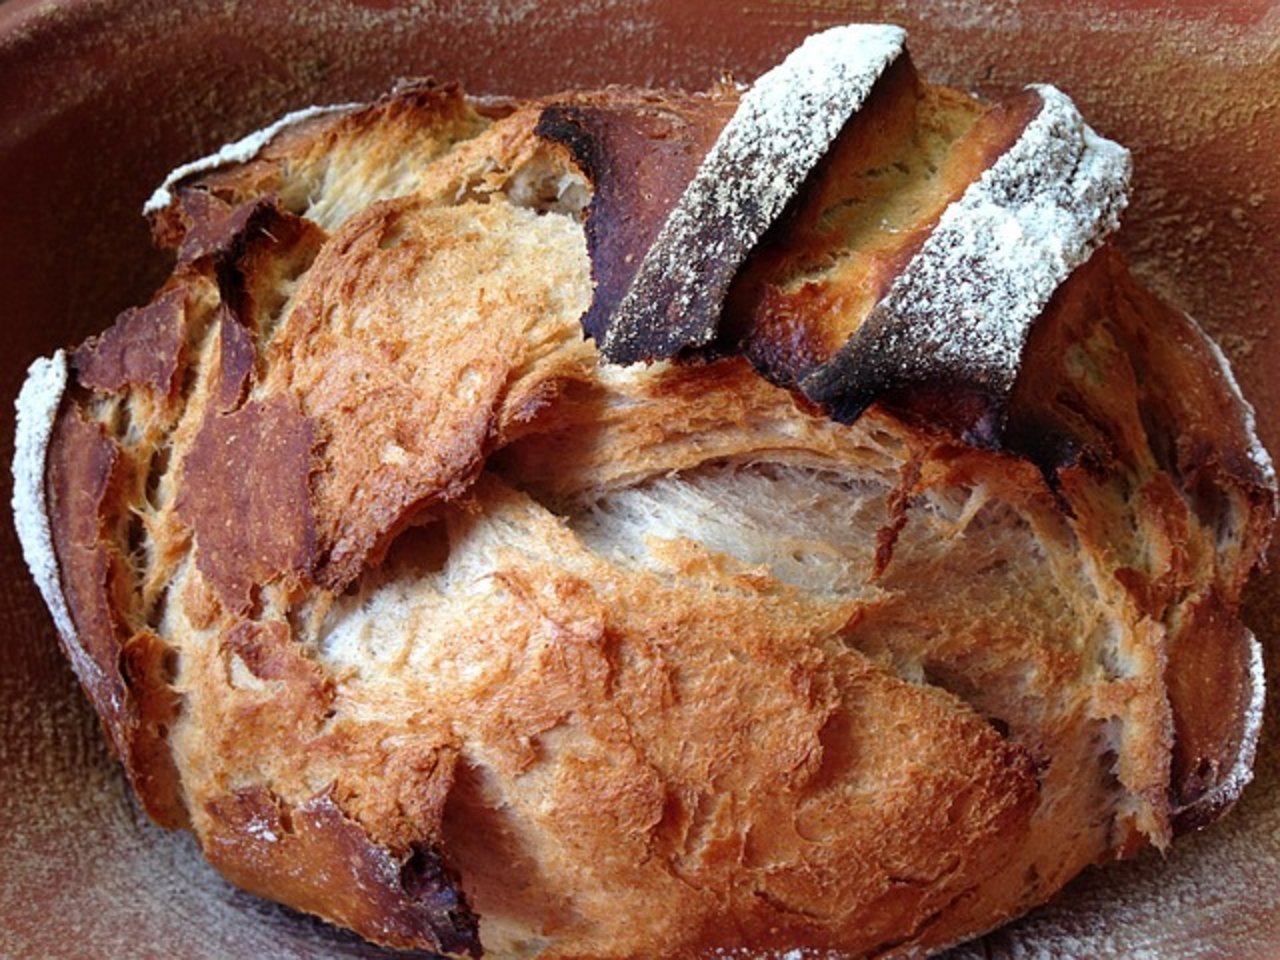 Frisch gebackenes Brot ist eine Verführung – aber bitte nicht zu schnell essen, denn erst nach längerer Zeit im Mund kommen alle Aromen zur Geltung. (Bild Pixabay)